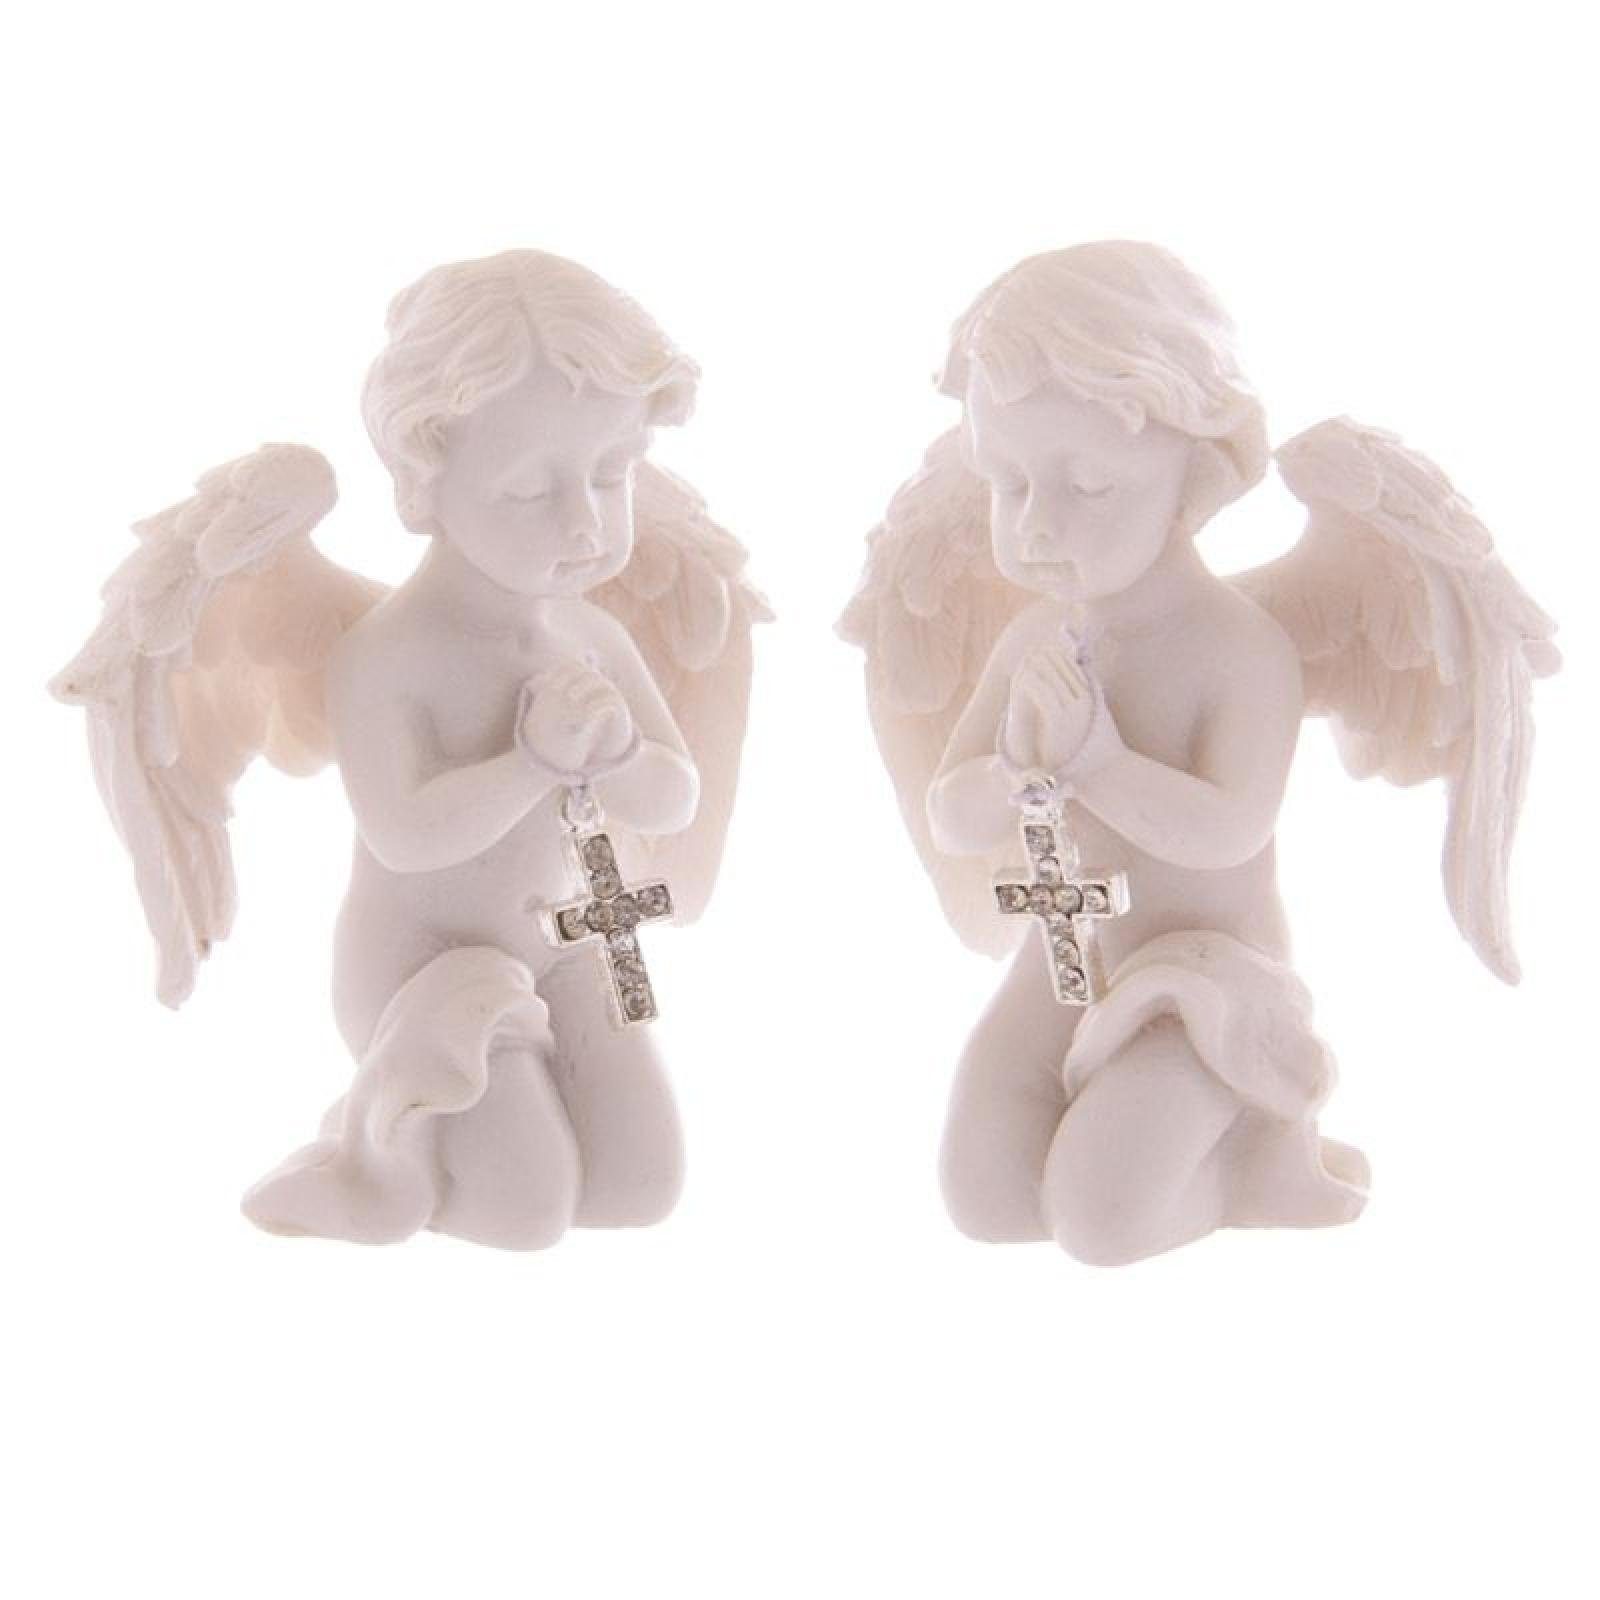 Puckator Dekofigur Betendes Engelchen mit Kreuz (pro Stück) | Dekofiguren